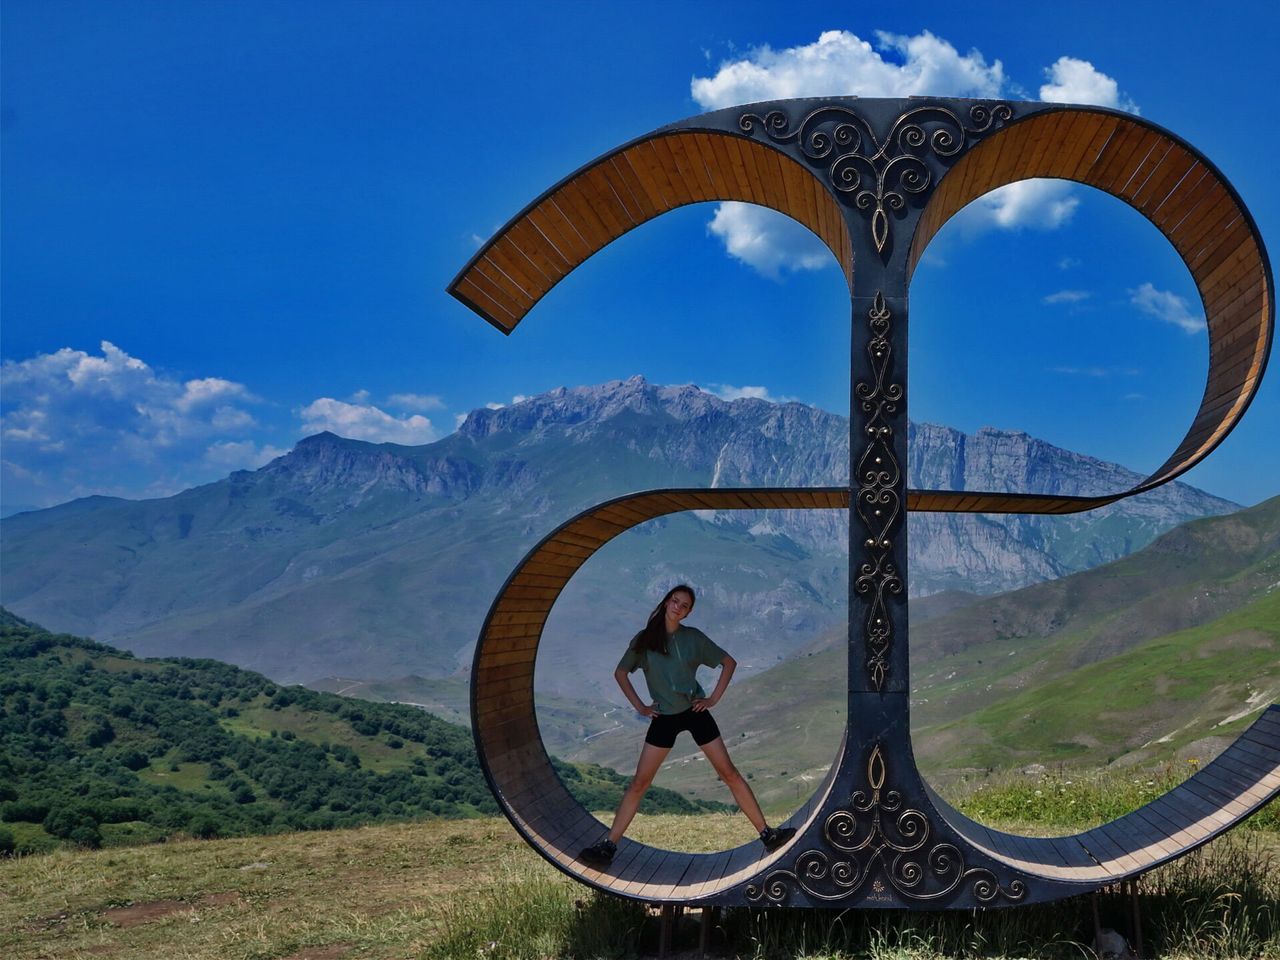 Аланское царство: путешествие в горную Осетию | Цена 5000₽, отзывы, описание экскурсии